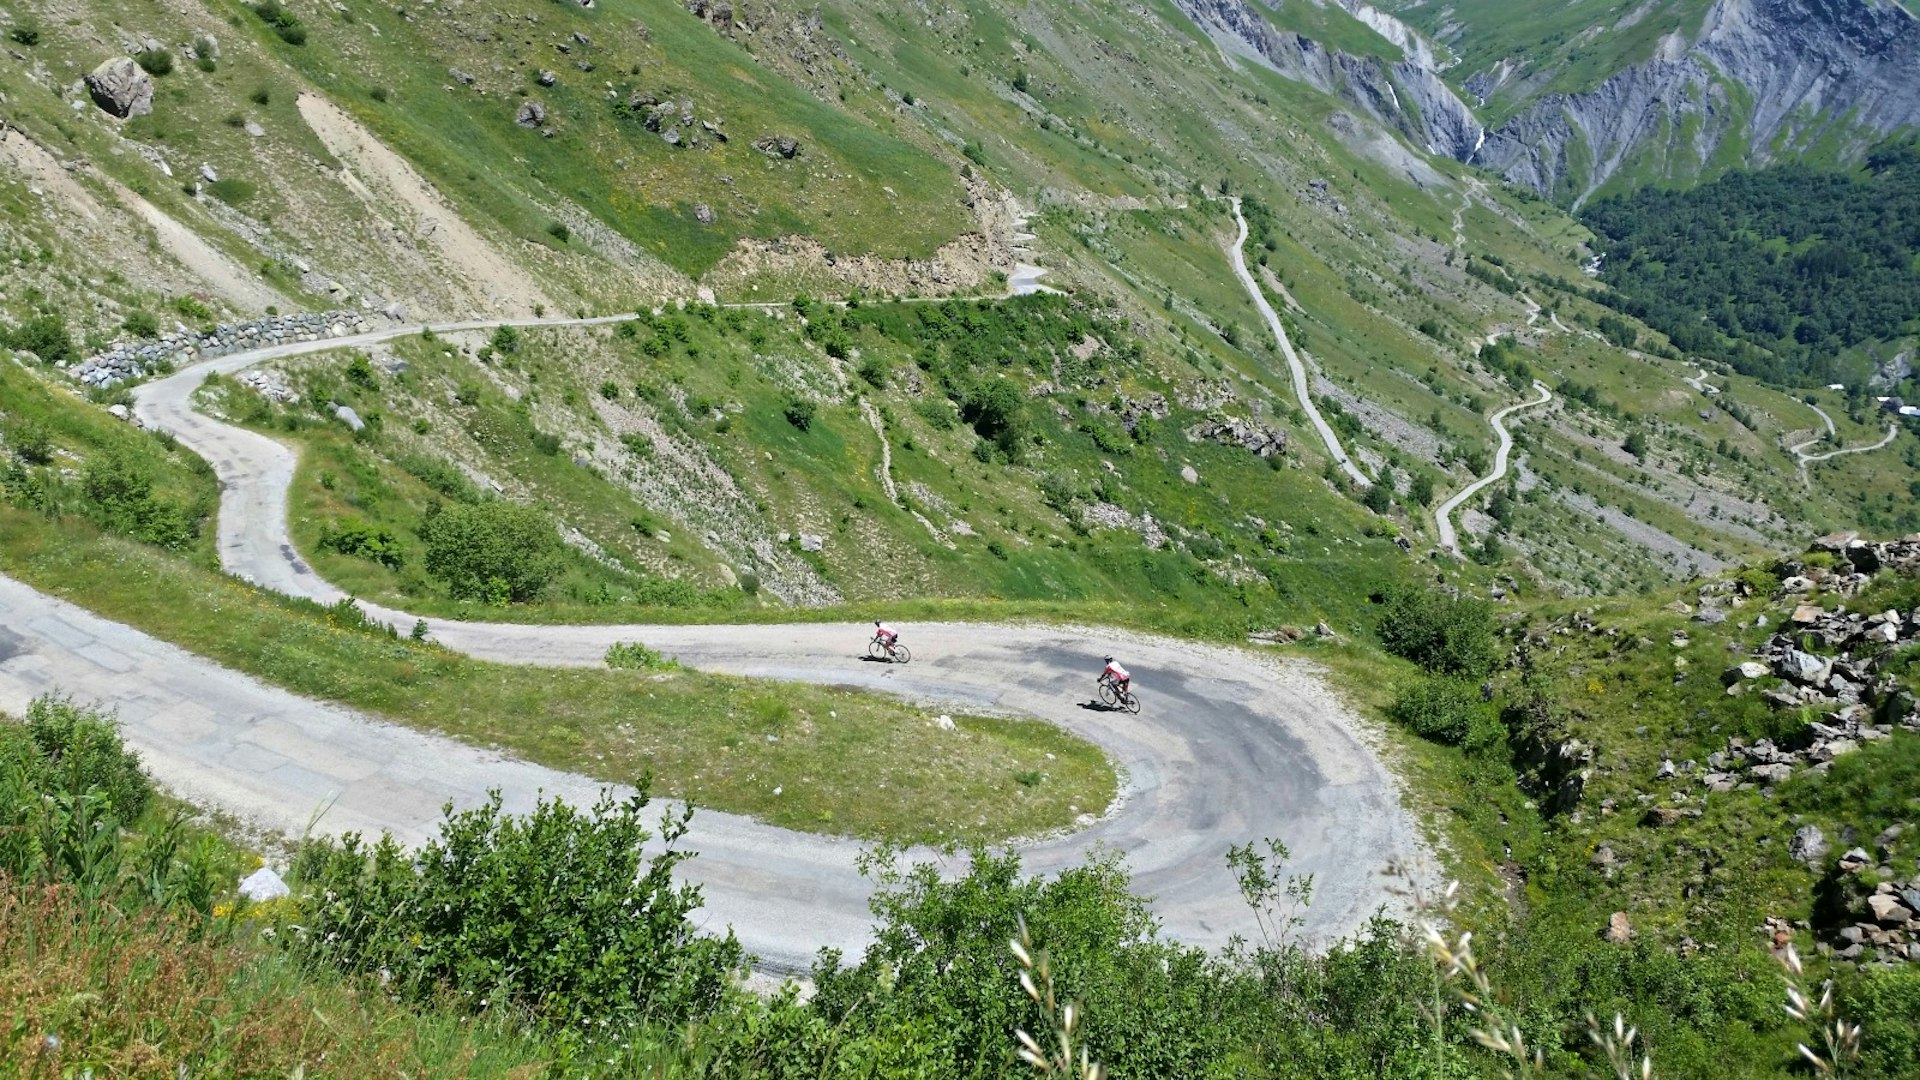 Alpe d'Huez cyclists on Col de Sarenne. Image © David Else / Lonely Planet